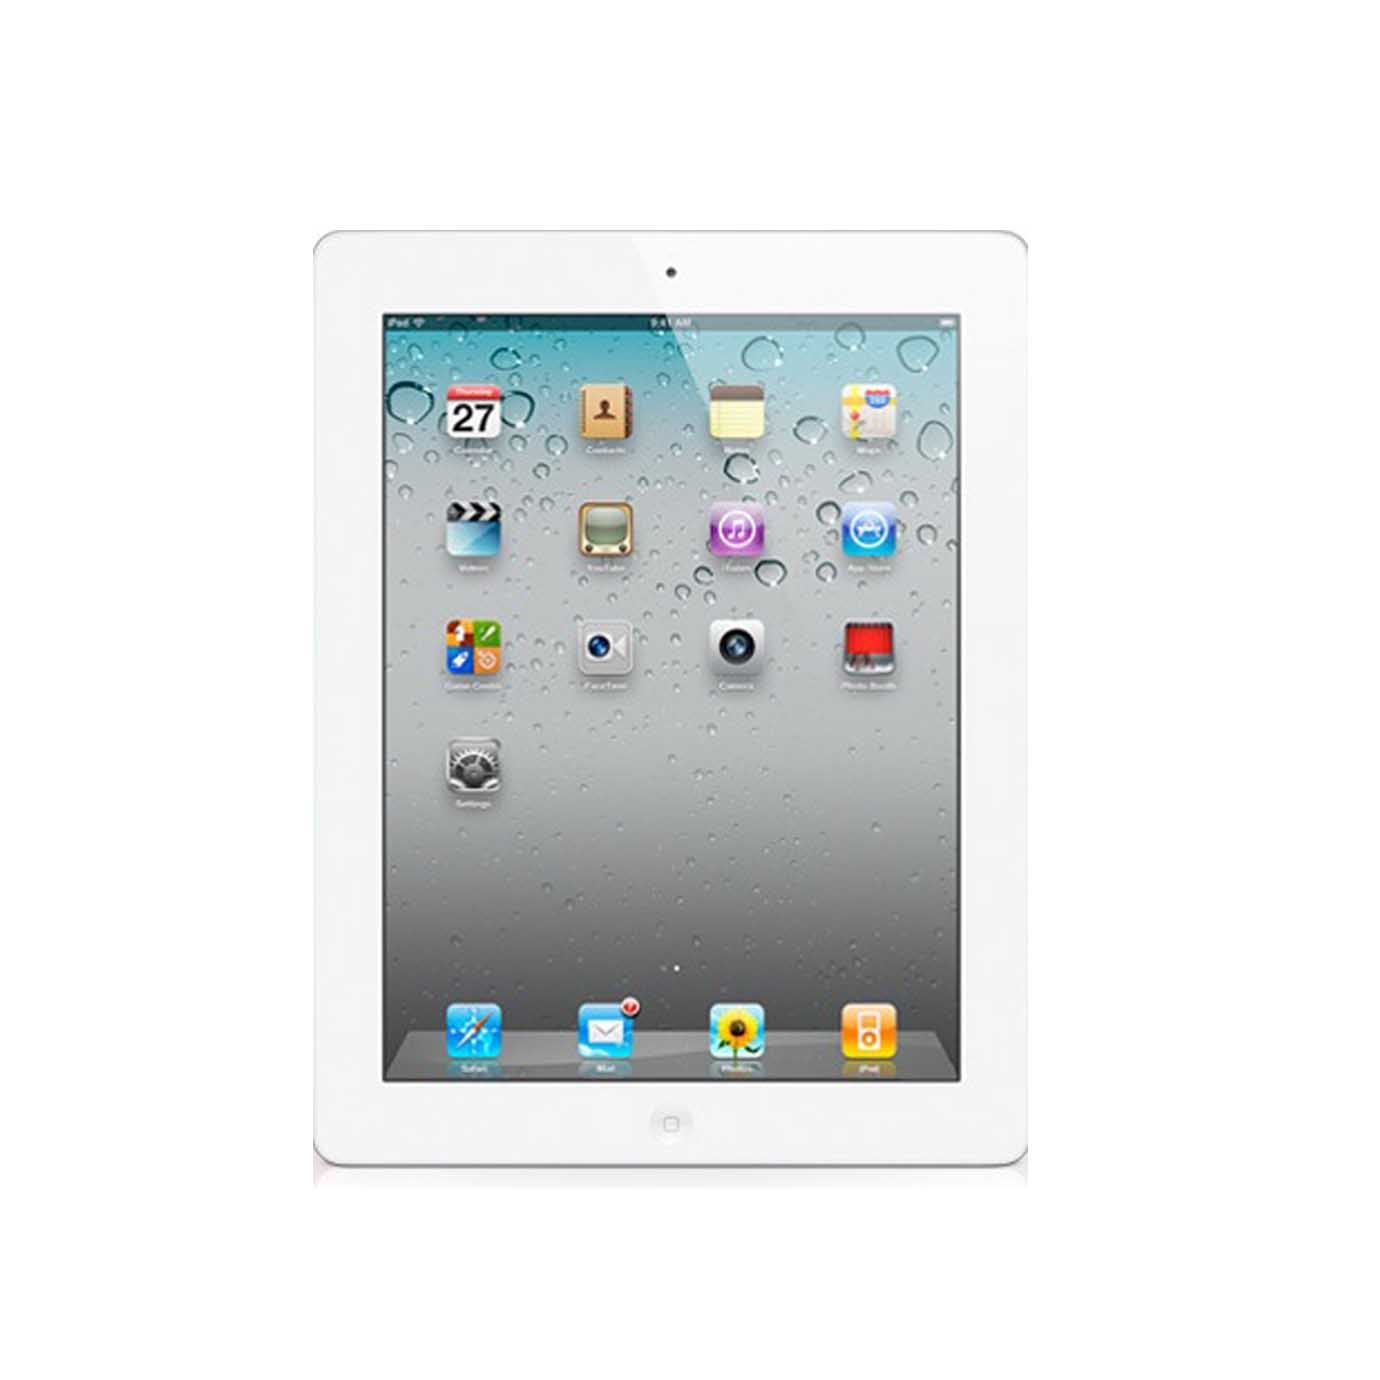 Emanduels': iPad 2: First Time Setup